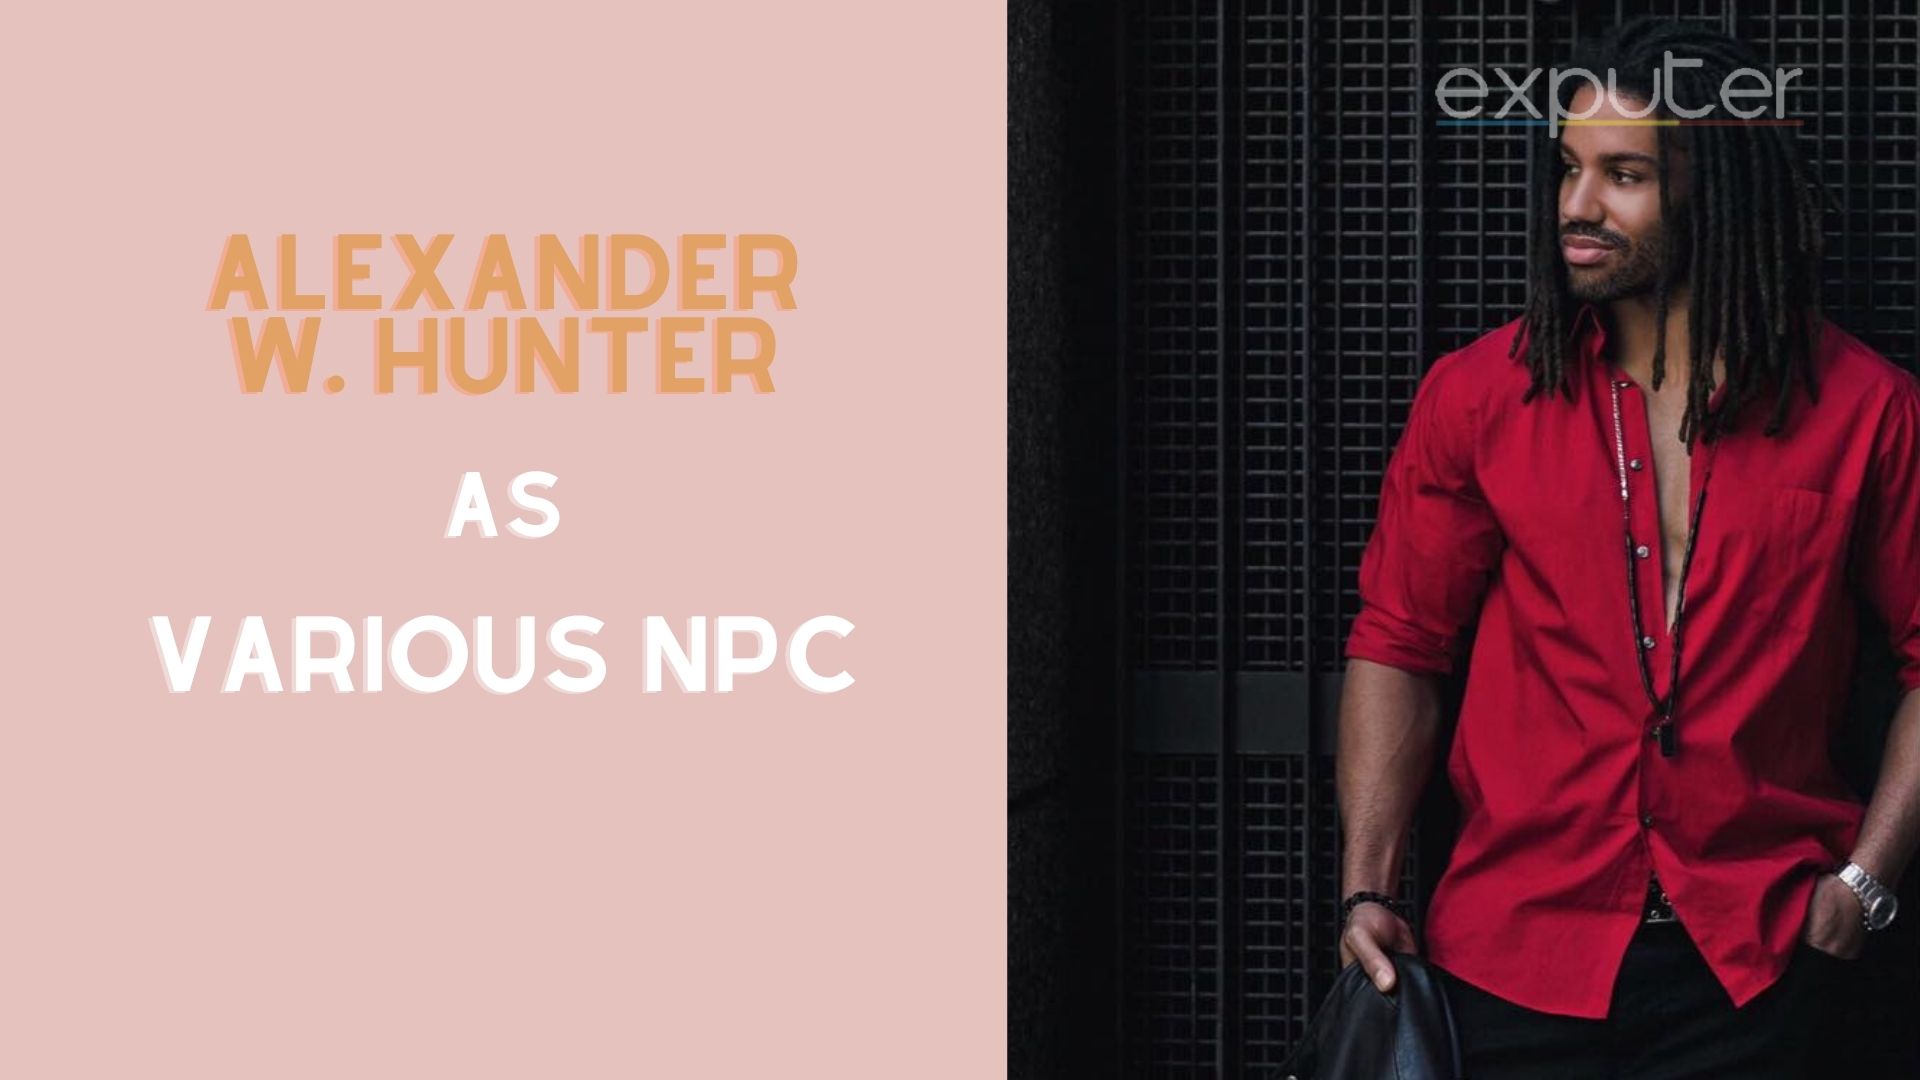 Alexander Hunter is voice of NPCs.